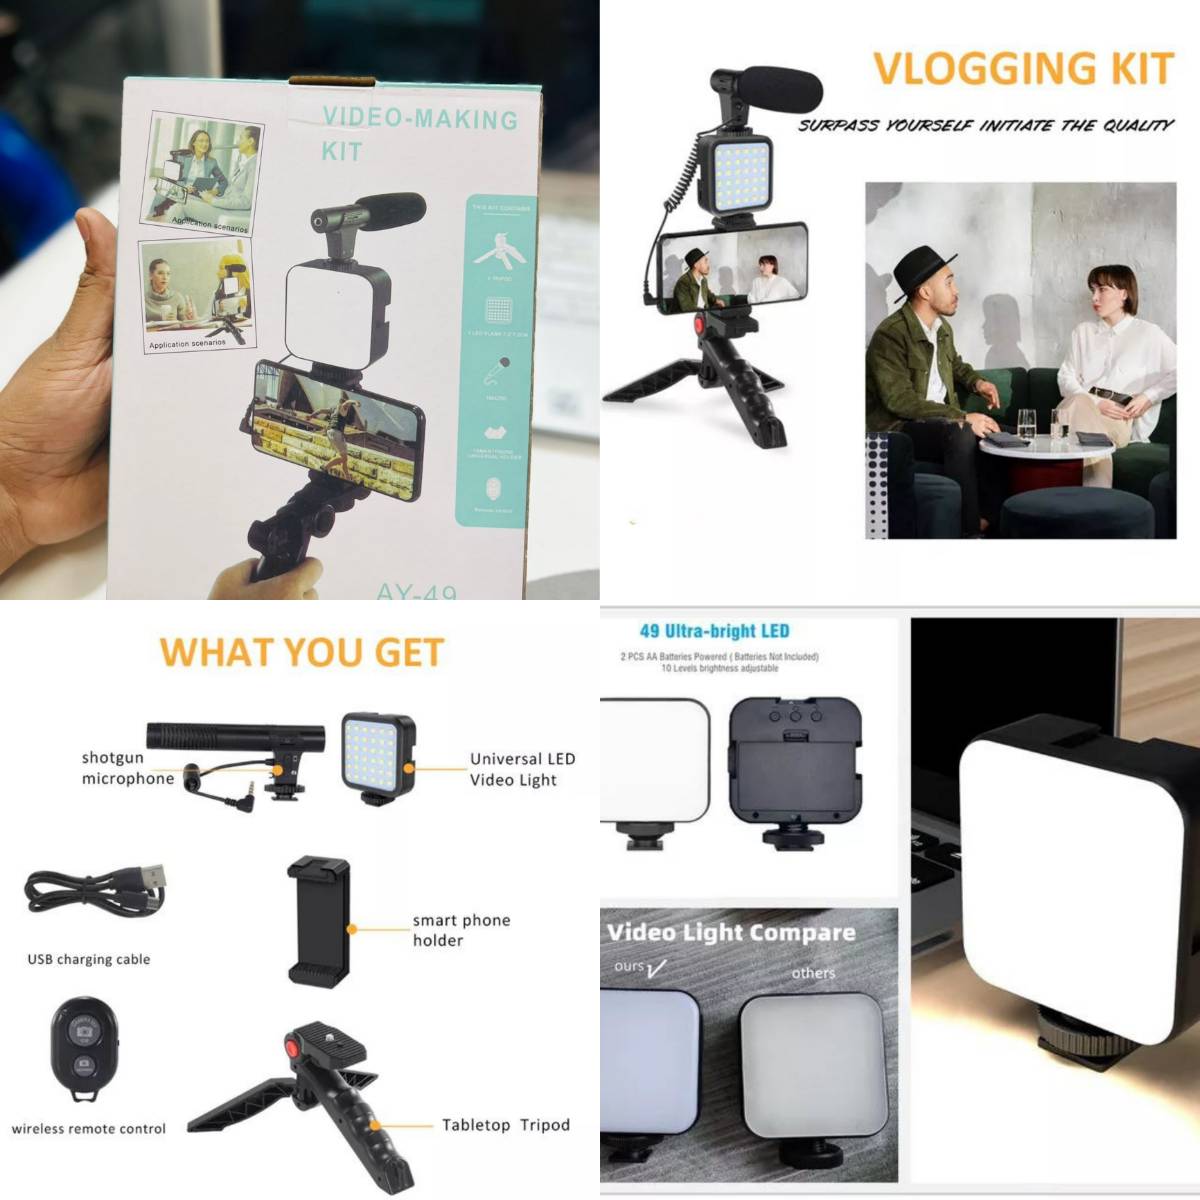 Vlogging Kit